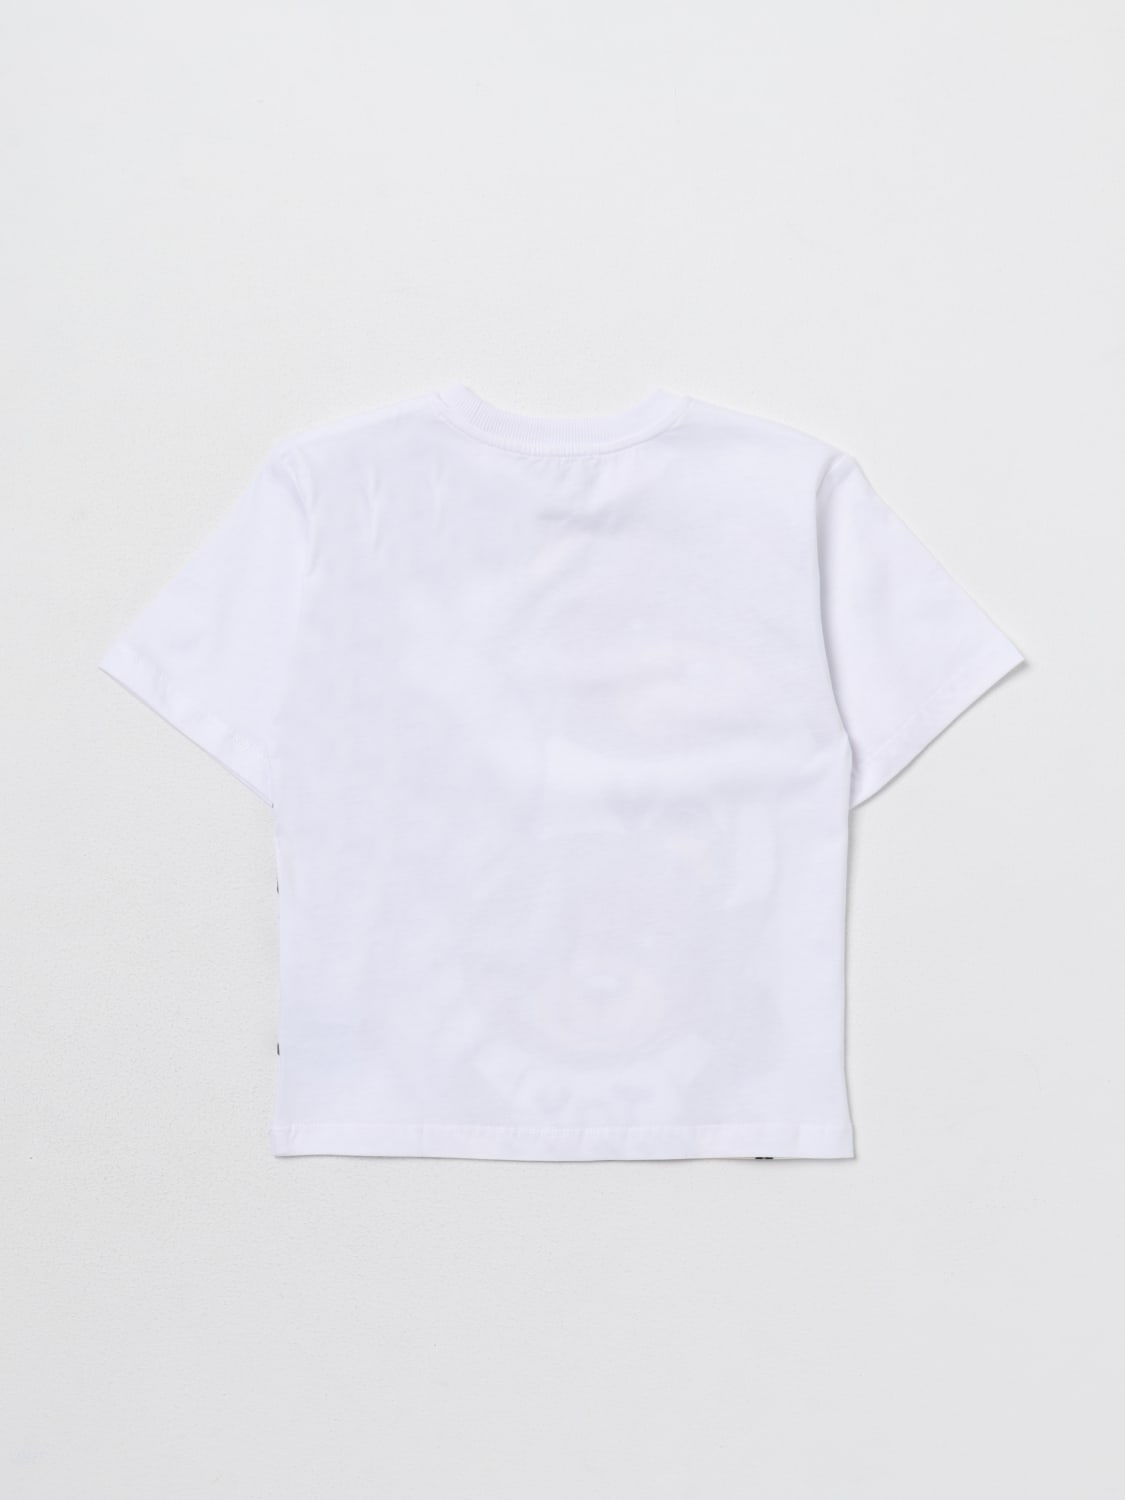 MOSCHINO KID: t-shirt for boy - White | Moschino Kid t-shirt ...